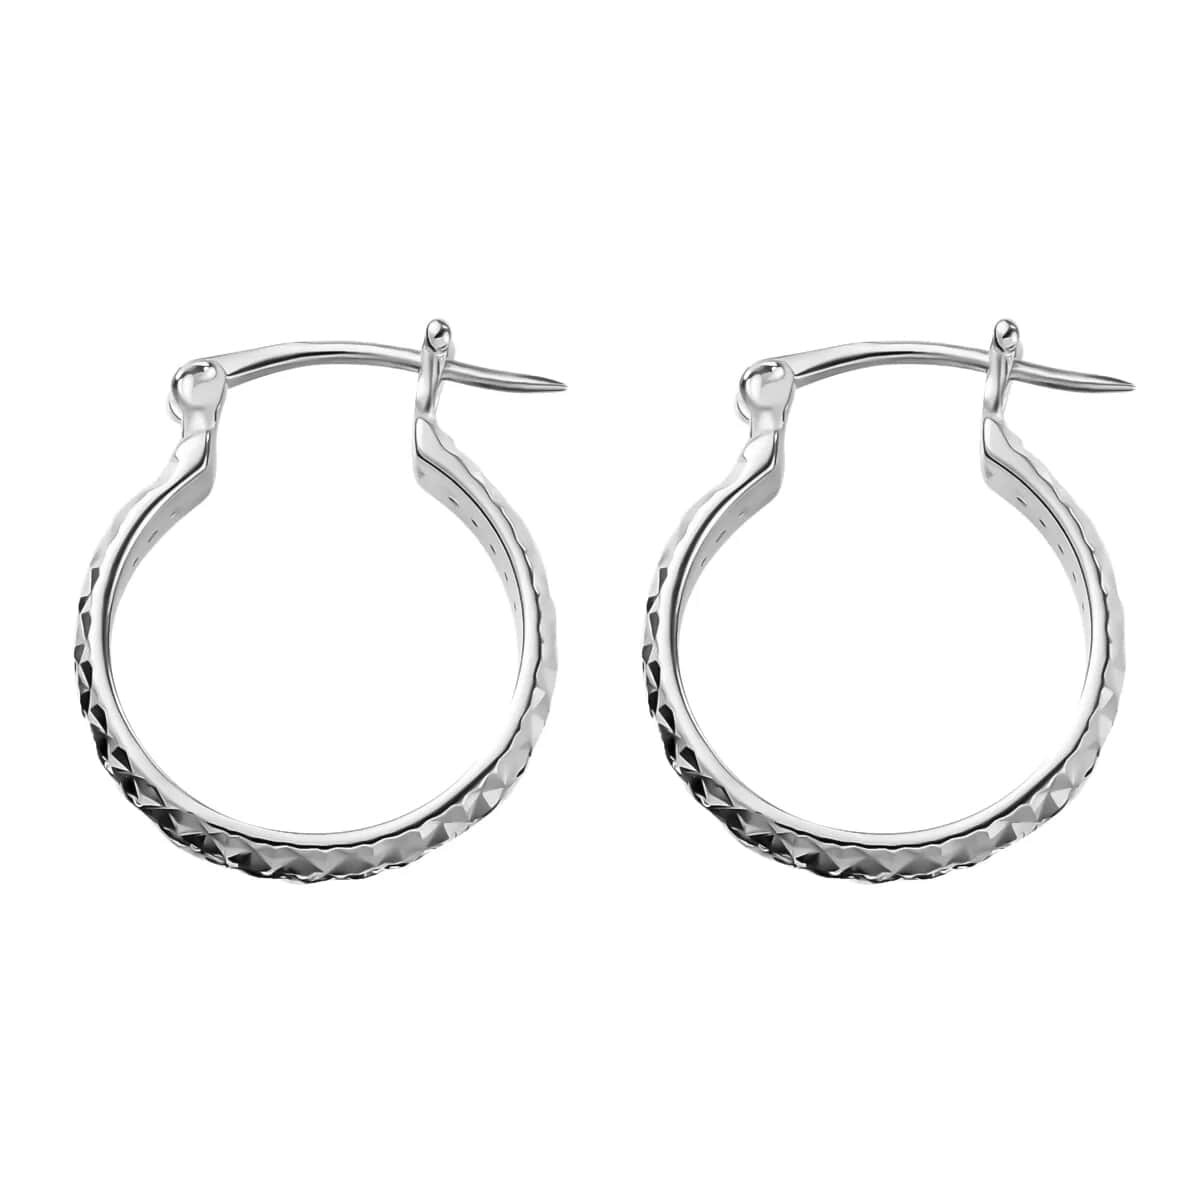 Buy Diamond Hoop Earrings In Platinum Plated Sterling Silver, 925